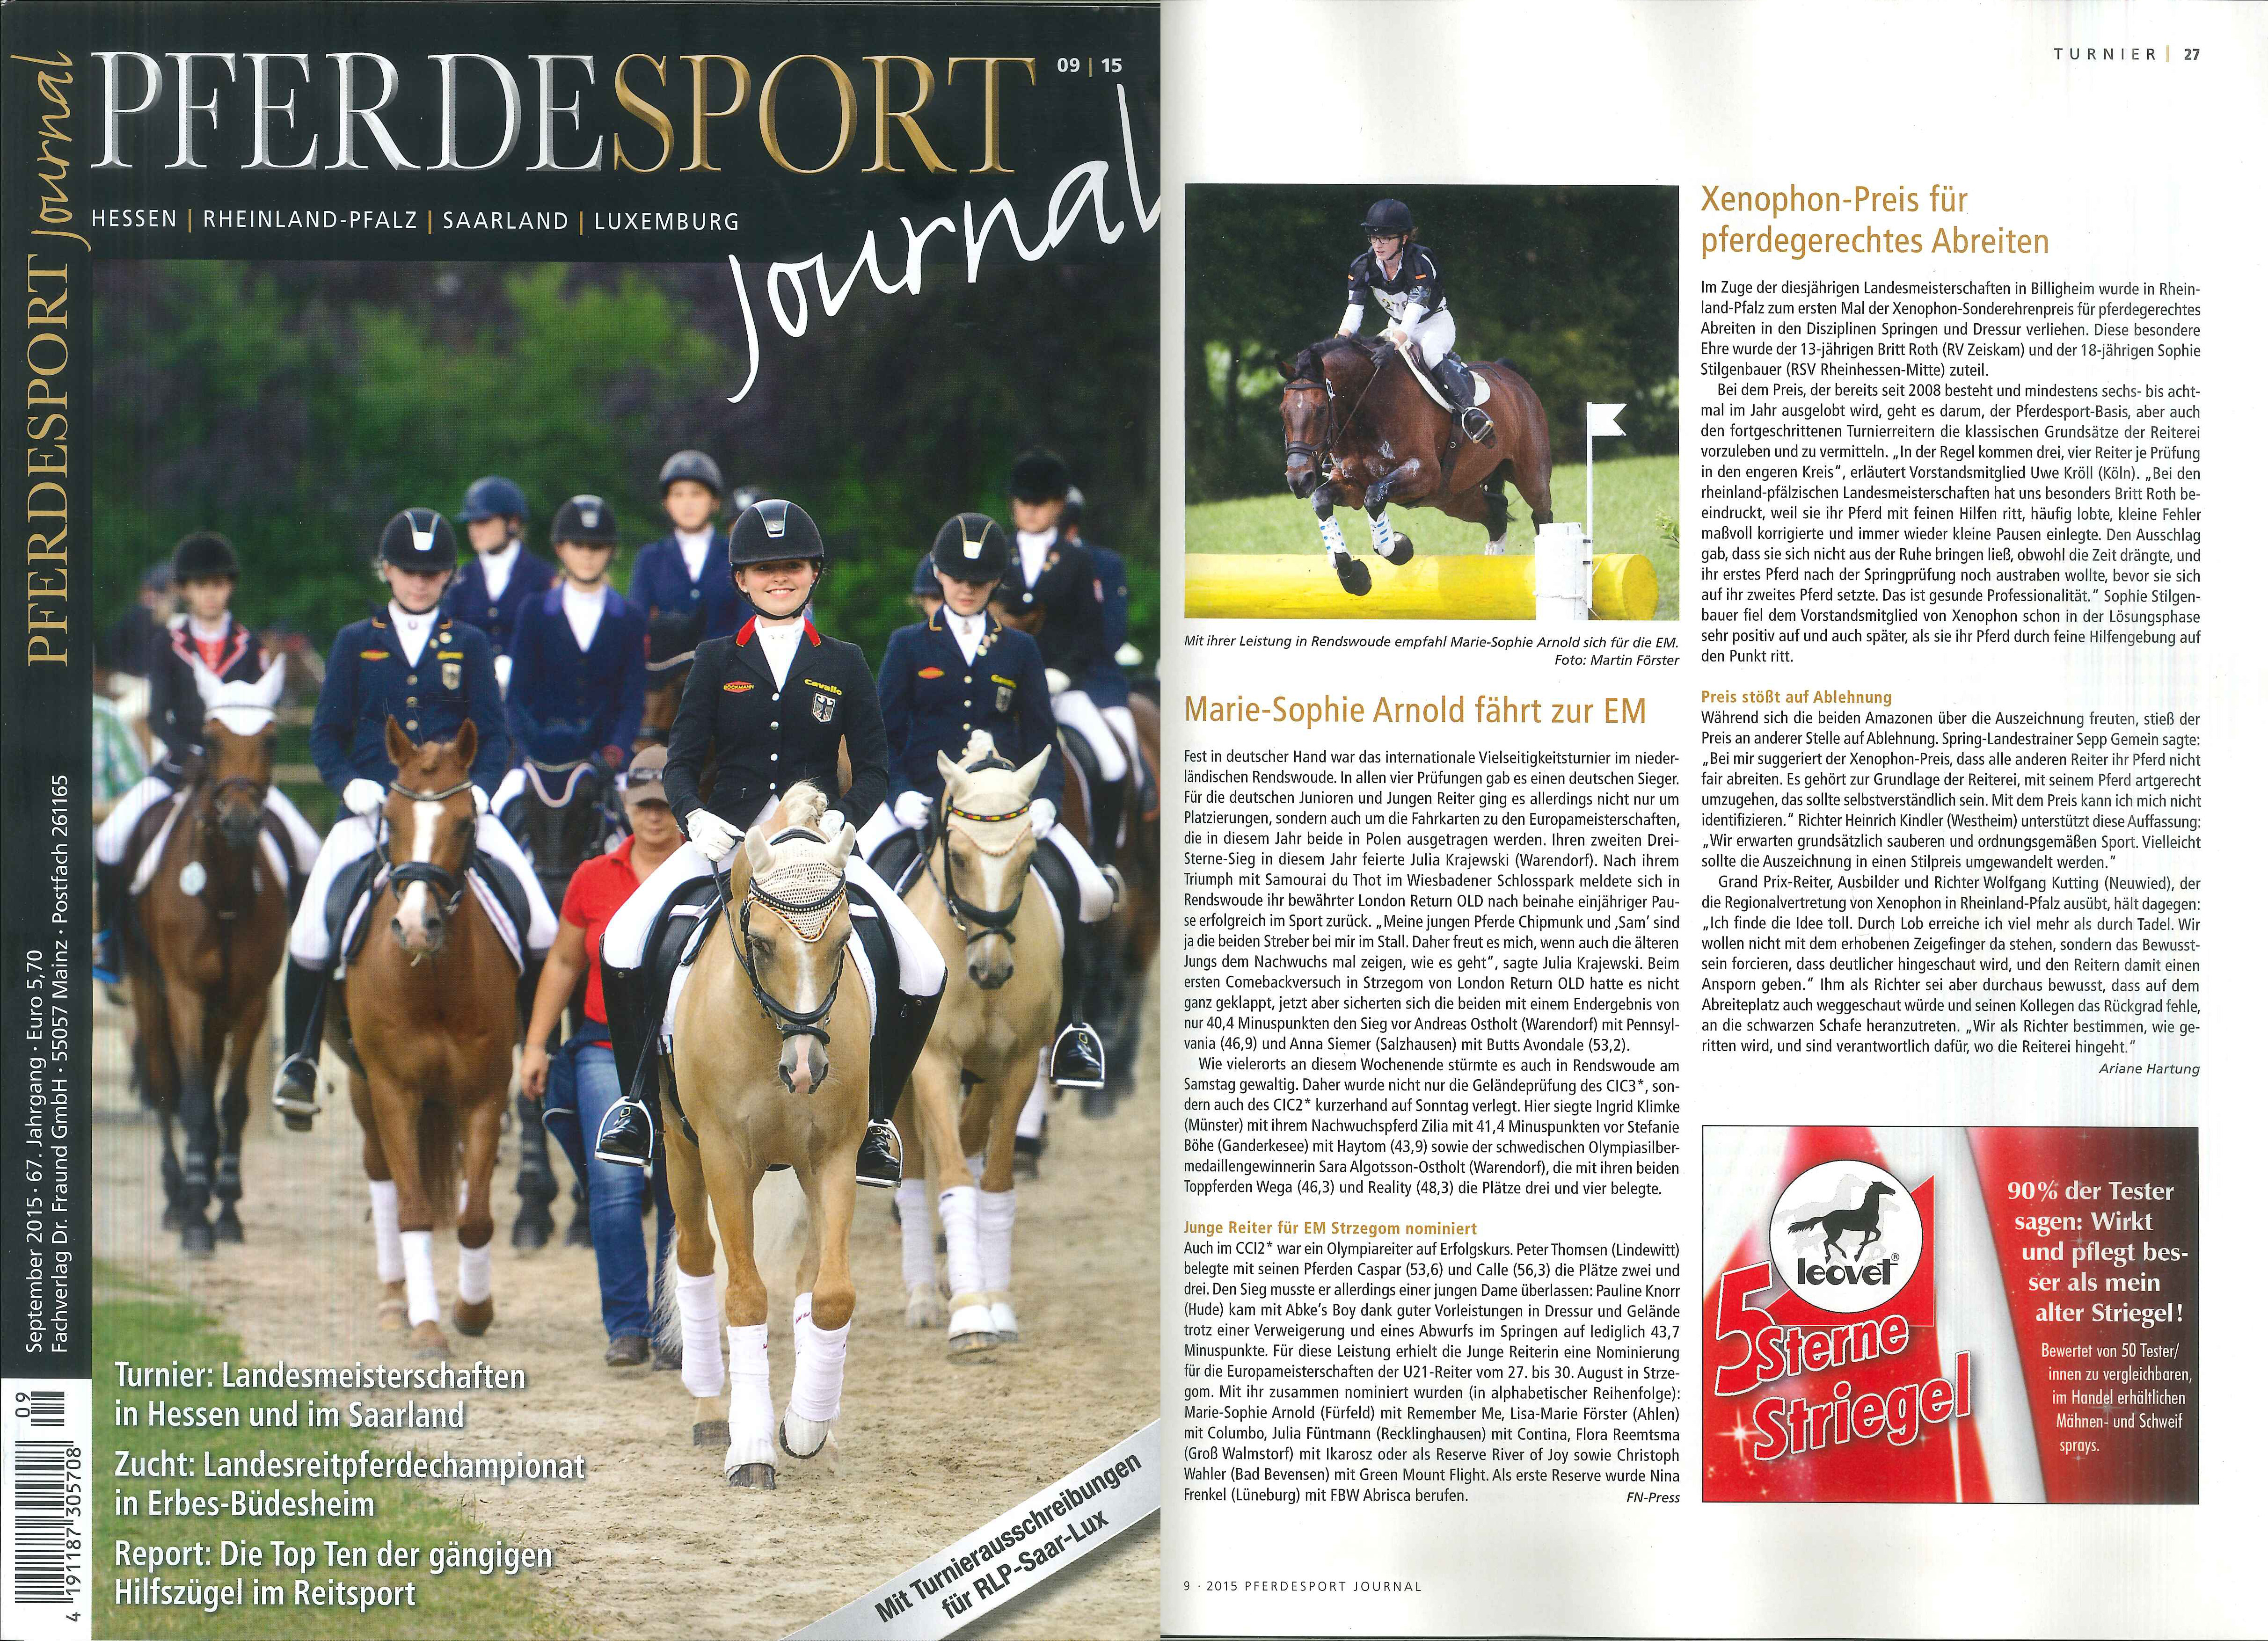 Pferdesport Journal Xenophon-Sonderehrenpreis 09/2015